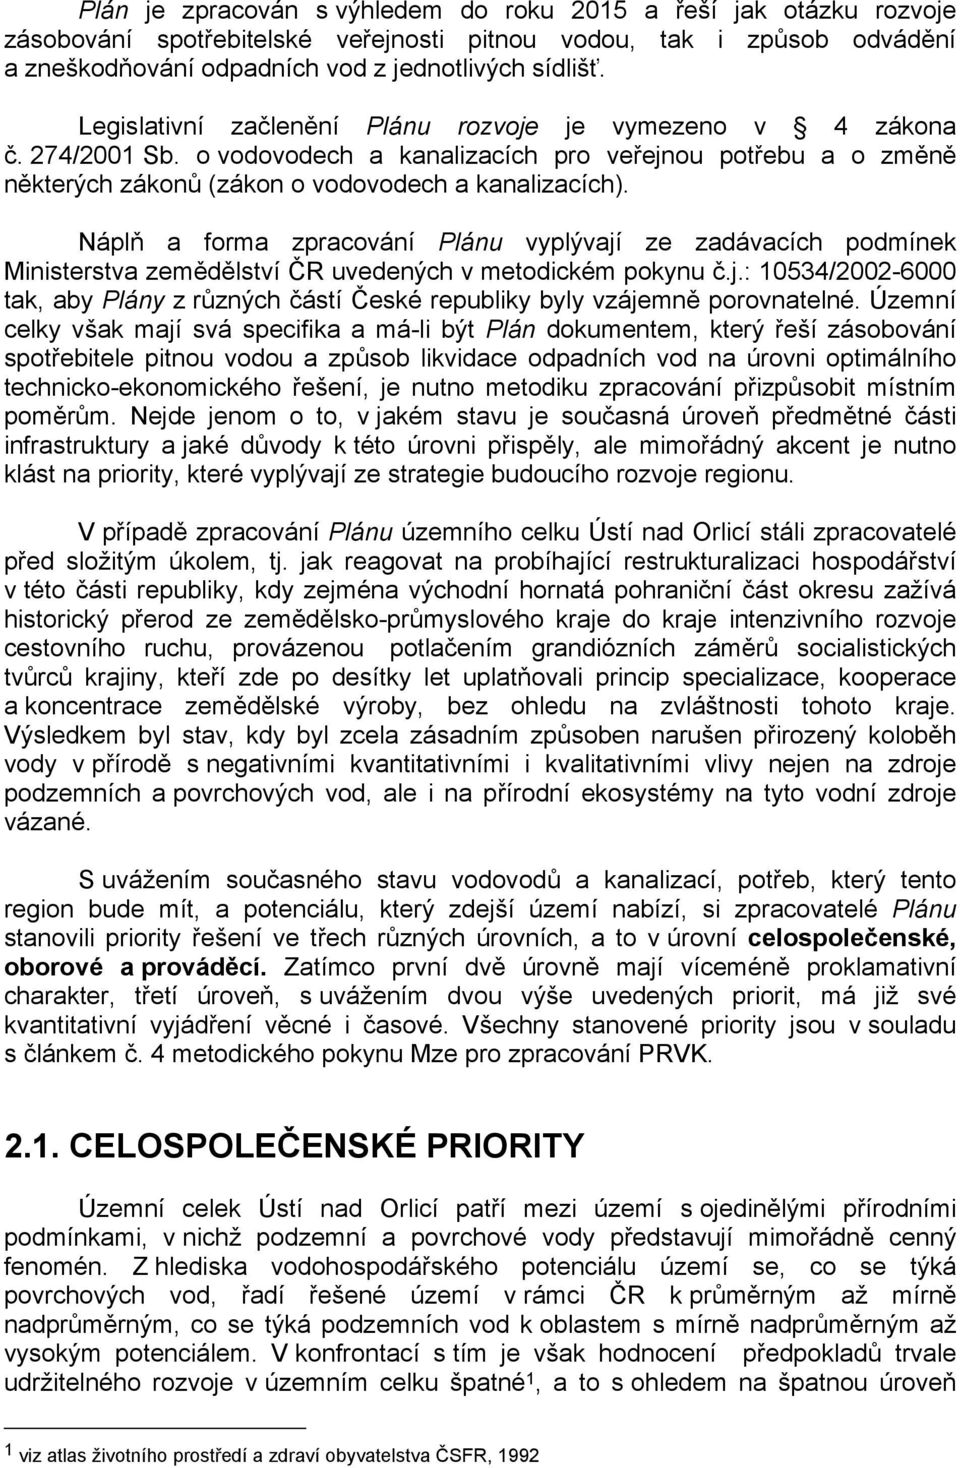 Náplň a forma zpracování Plánu vyplývají ze zadávacích podmínek Ministerstva zemědělství ČR uvedených v metodickém pokynu č.j.: 10534/2002-6000 tak, aby Plány z různých částí České republiky byly vzájemně porovnatelné.